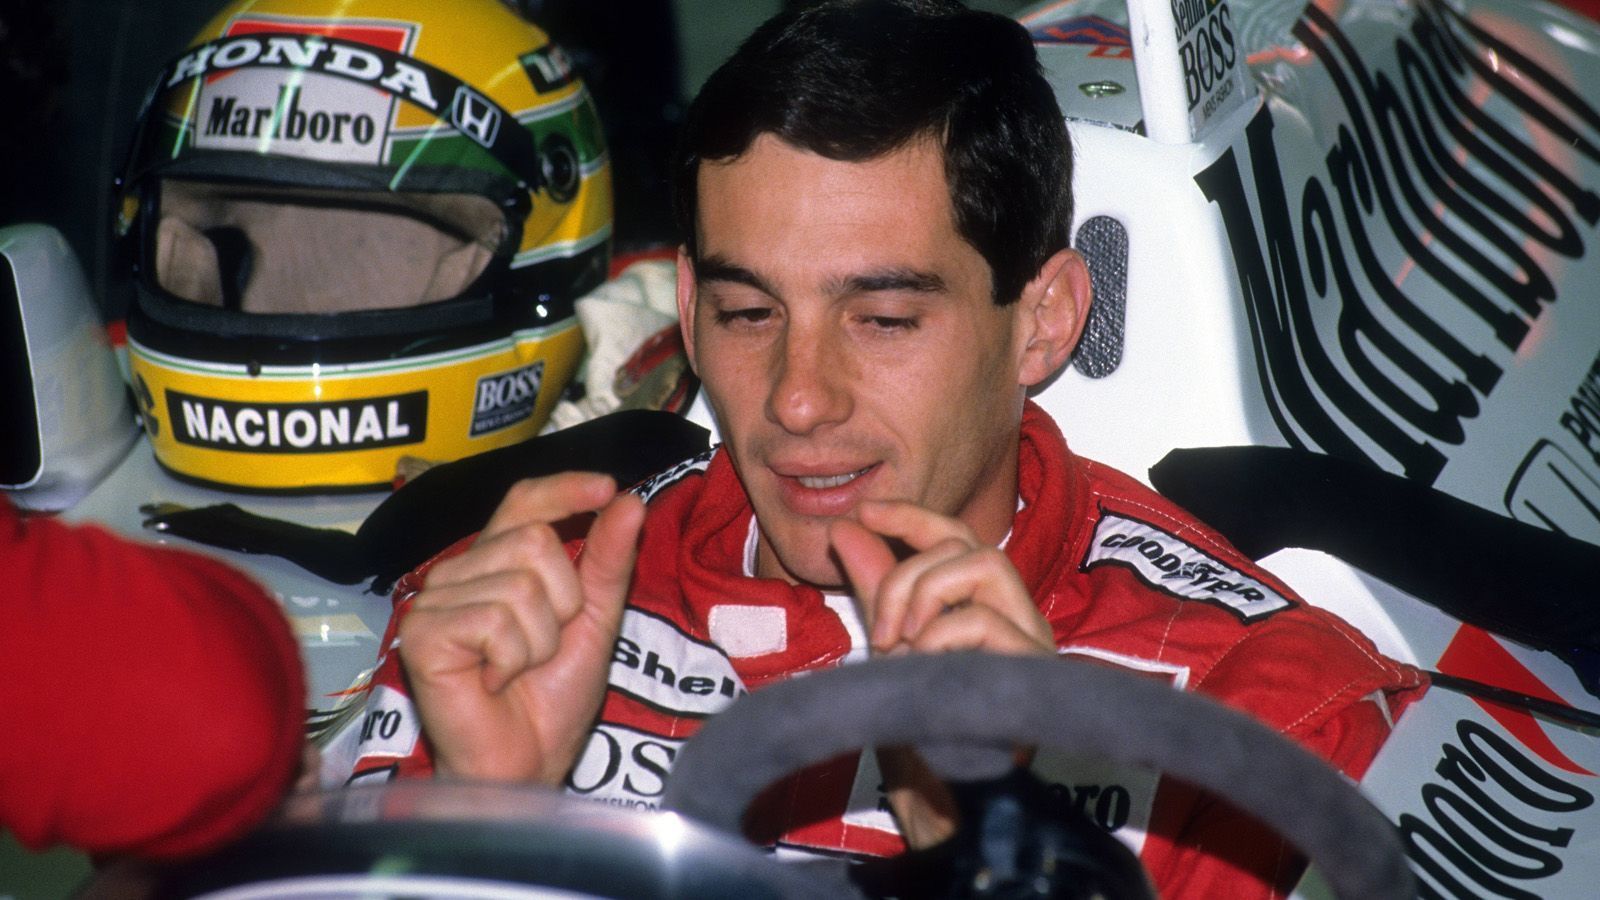 
                <strong>Ayrton Senna wird erstmals Formel-1-Weltmeister</strong><br>
                Er gilt als der beste Rennfahrer seiner Zeit, wenn nicht gar der Geschichte: Ayrton Senna. Der 1994 in Imola verstorbene Brasilianer wechselt zur Saison 1988 von Lotus zu McLaren-Honda und fährt gemeinsam mit seinem Stall-Rivalen Alain Prost die Konkurrenz in Grund und Boden. Wäre Senna nicht in Monza wenige Runden vor Schluss beim Überrunden über Jean-Louis Schlesser "gestolpert", die McLaren hätten alle 16 Grand Prix gewonnen. In Suzuka krönt sich Senna nach spektakulärem Finish zum Weltmeister vor Prost.
              